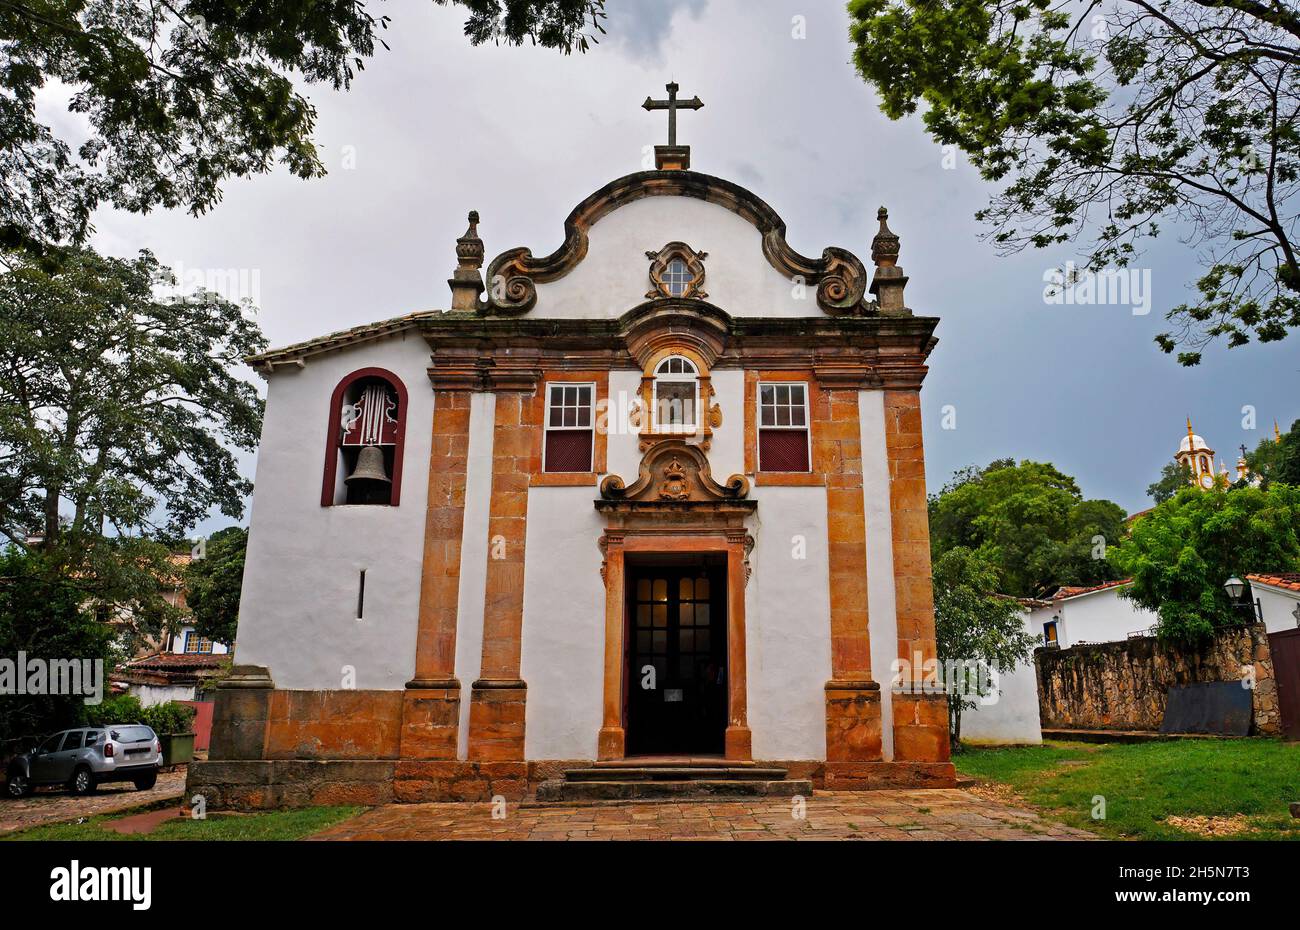 Baroque church in Tiradentes, Minas Gerais, Brazil Stock Photo